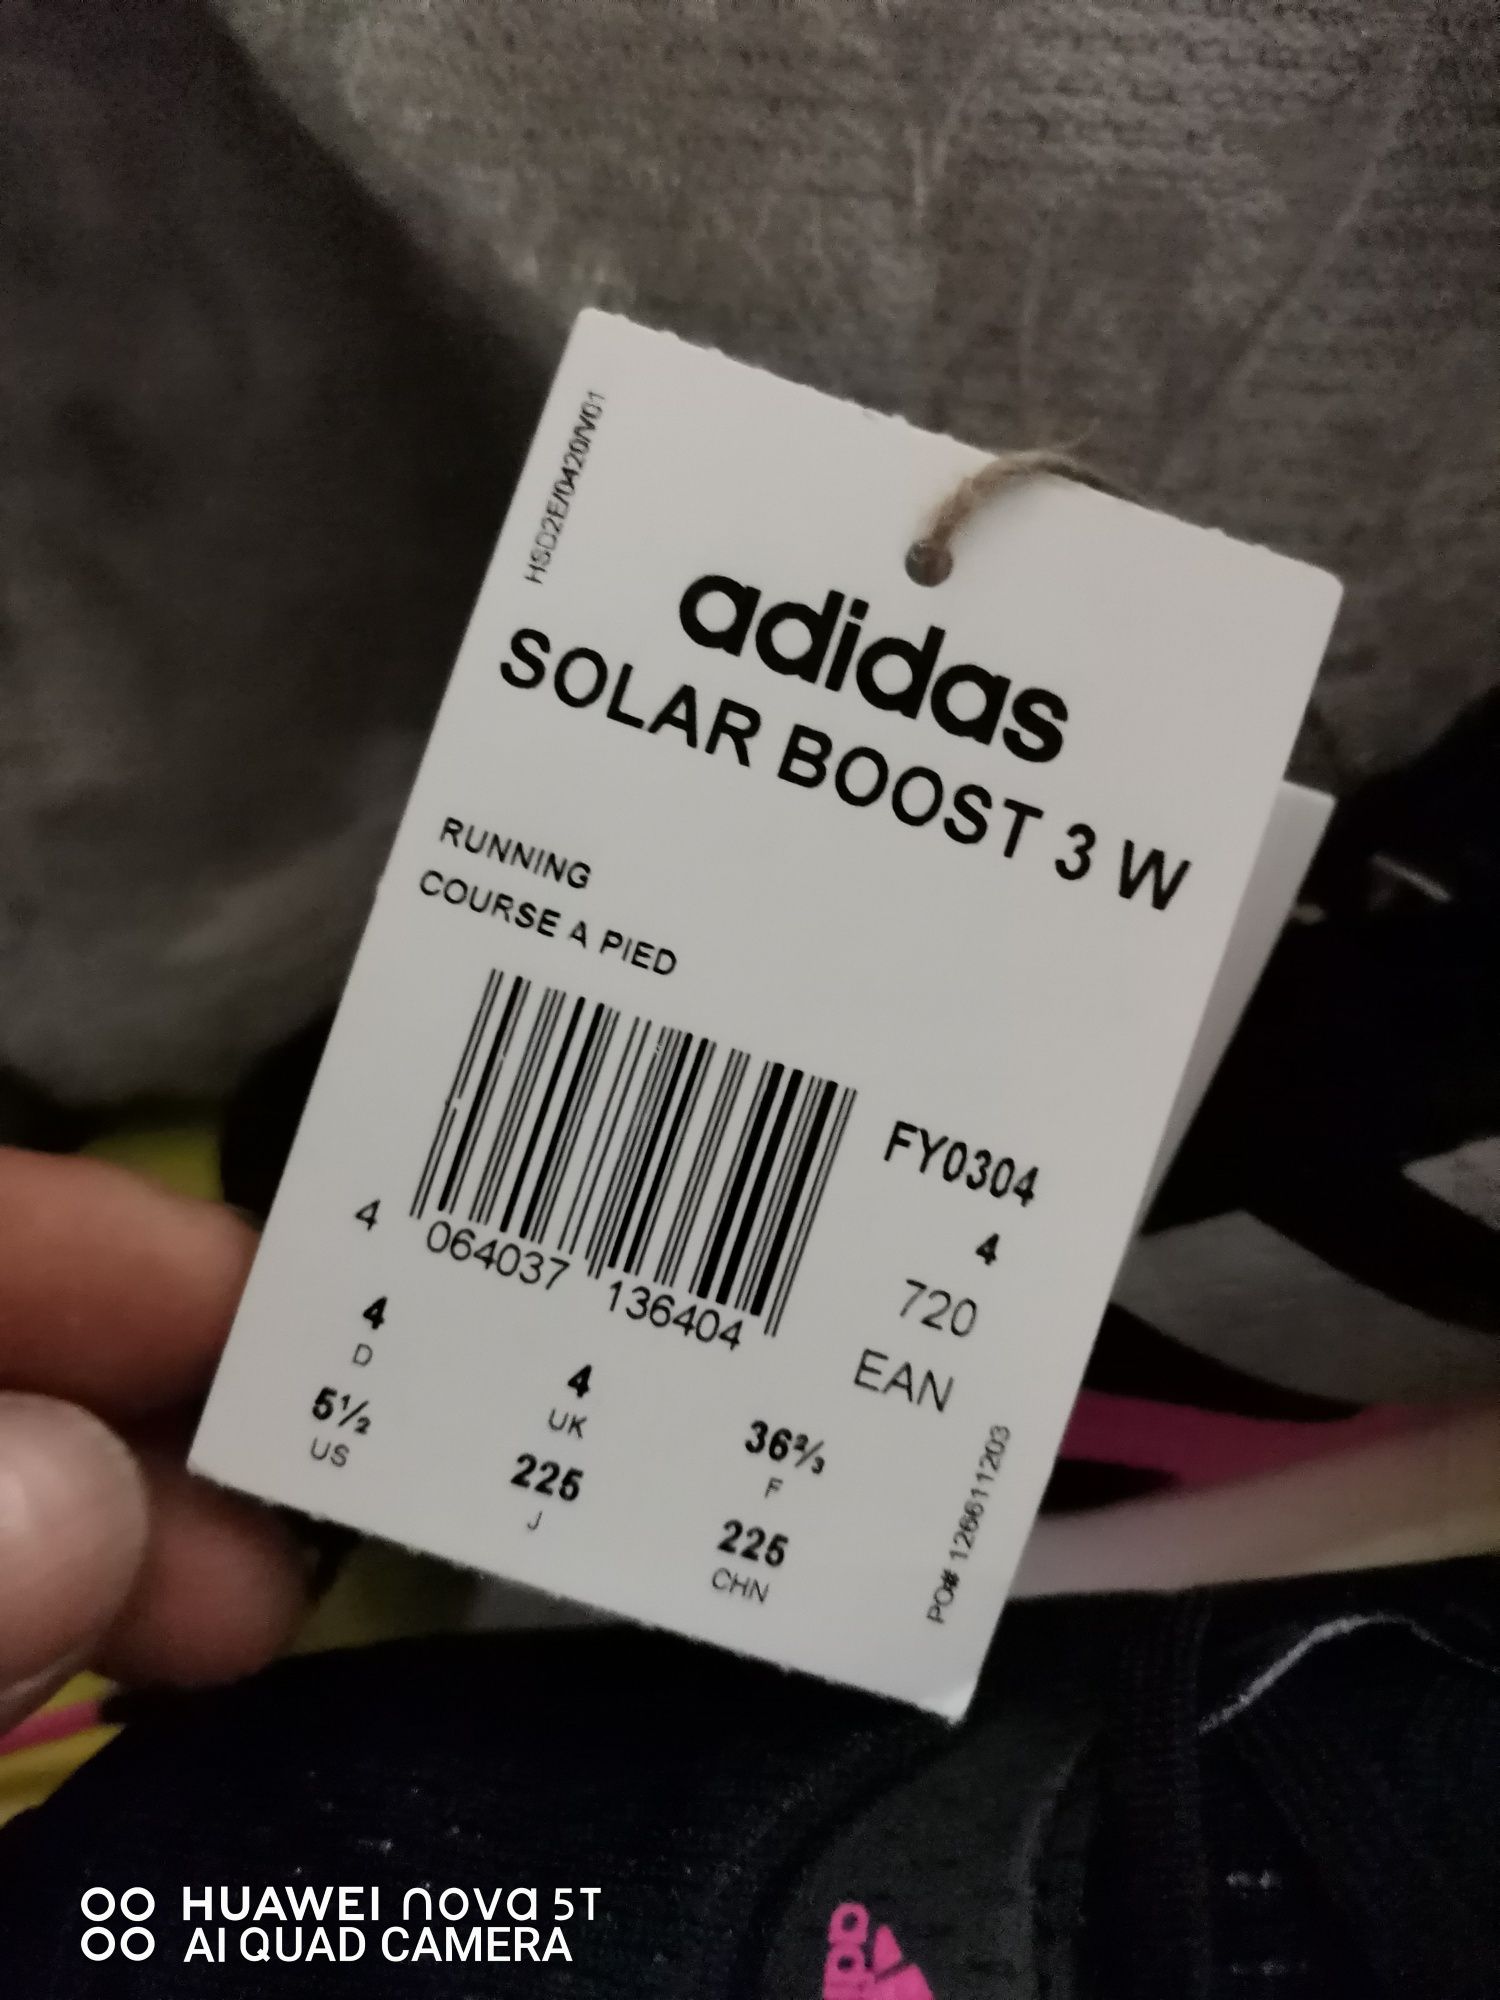 Adidas solar boost 3w